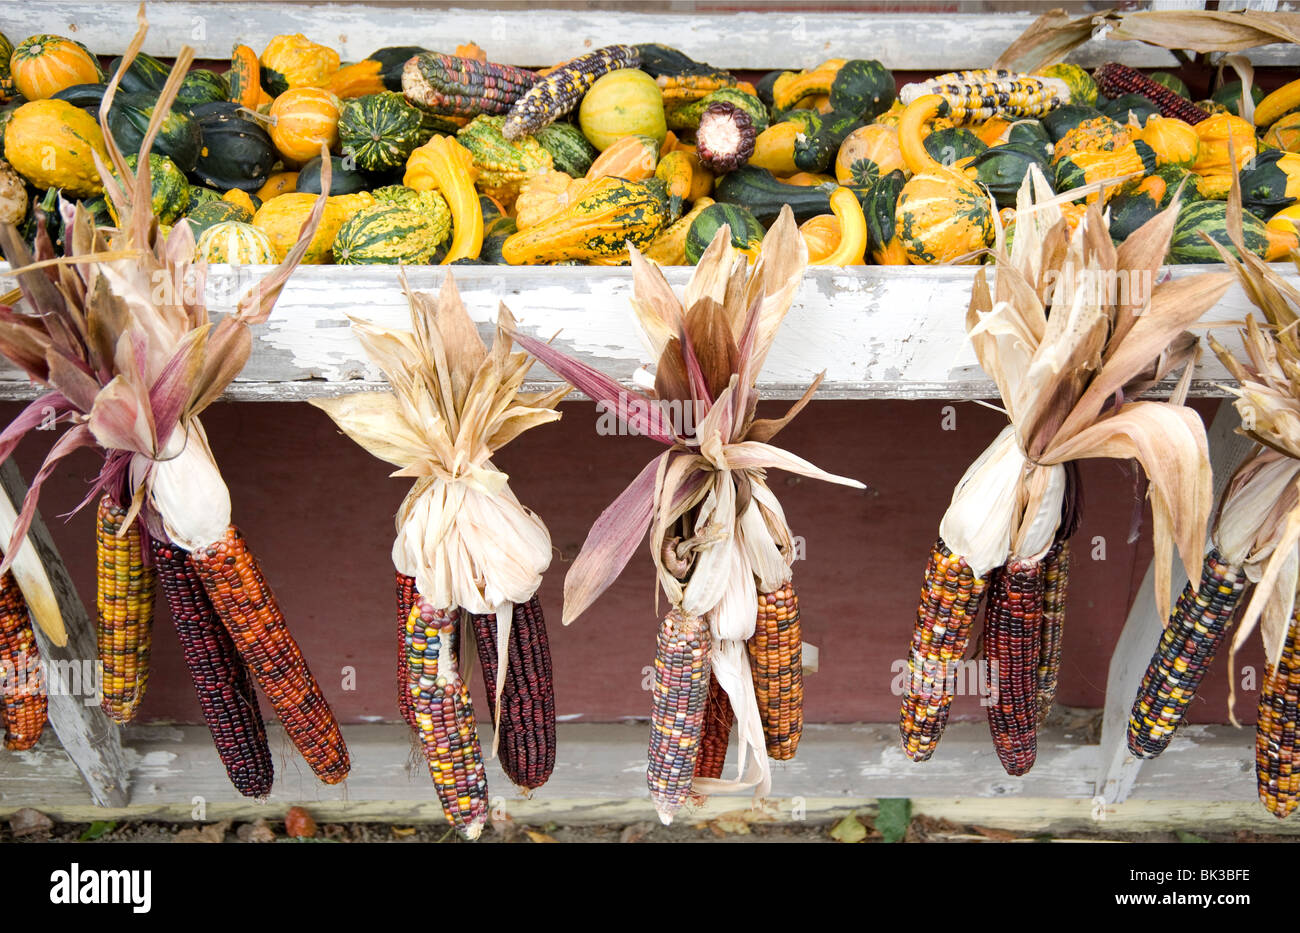 Mais und Kürbisse zum Verkauf an einem Straßenrand stehen in Massachusetts, New England, Vereinigte Staaten von Amerika, Nordamerika Stockfoto